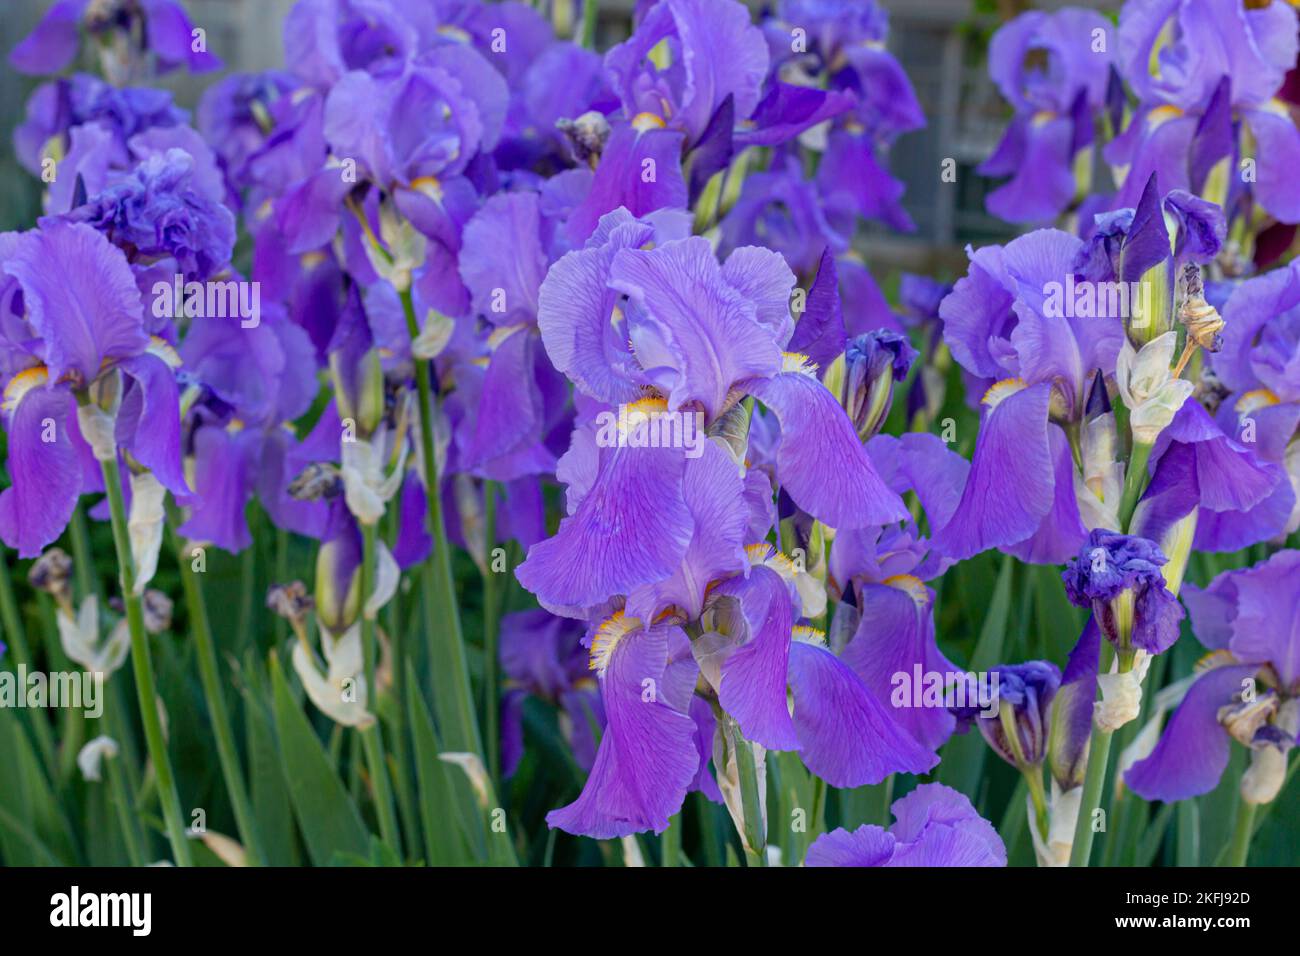 purple japanese iris flowers Stock Photo